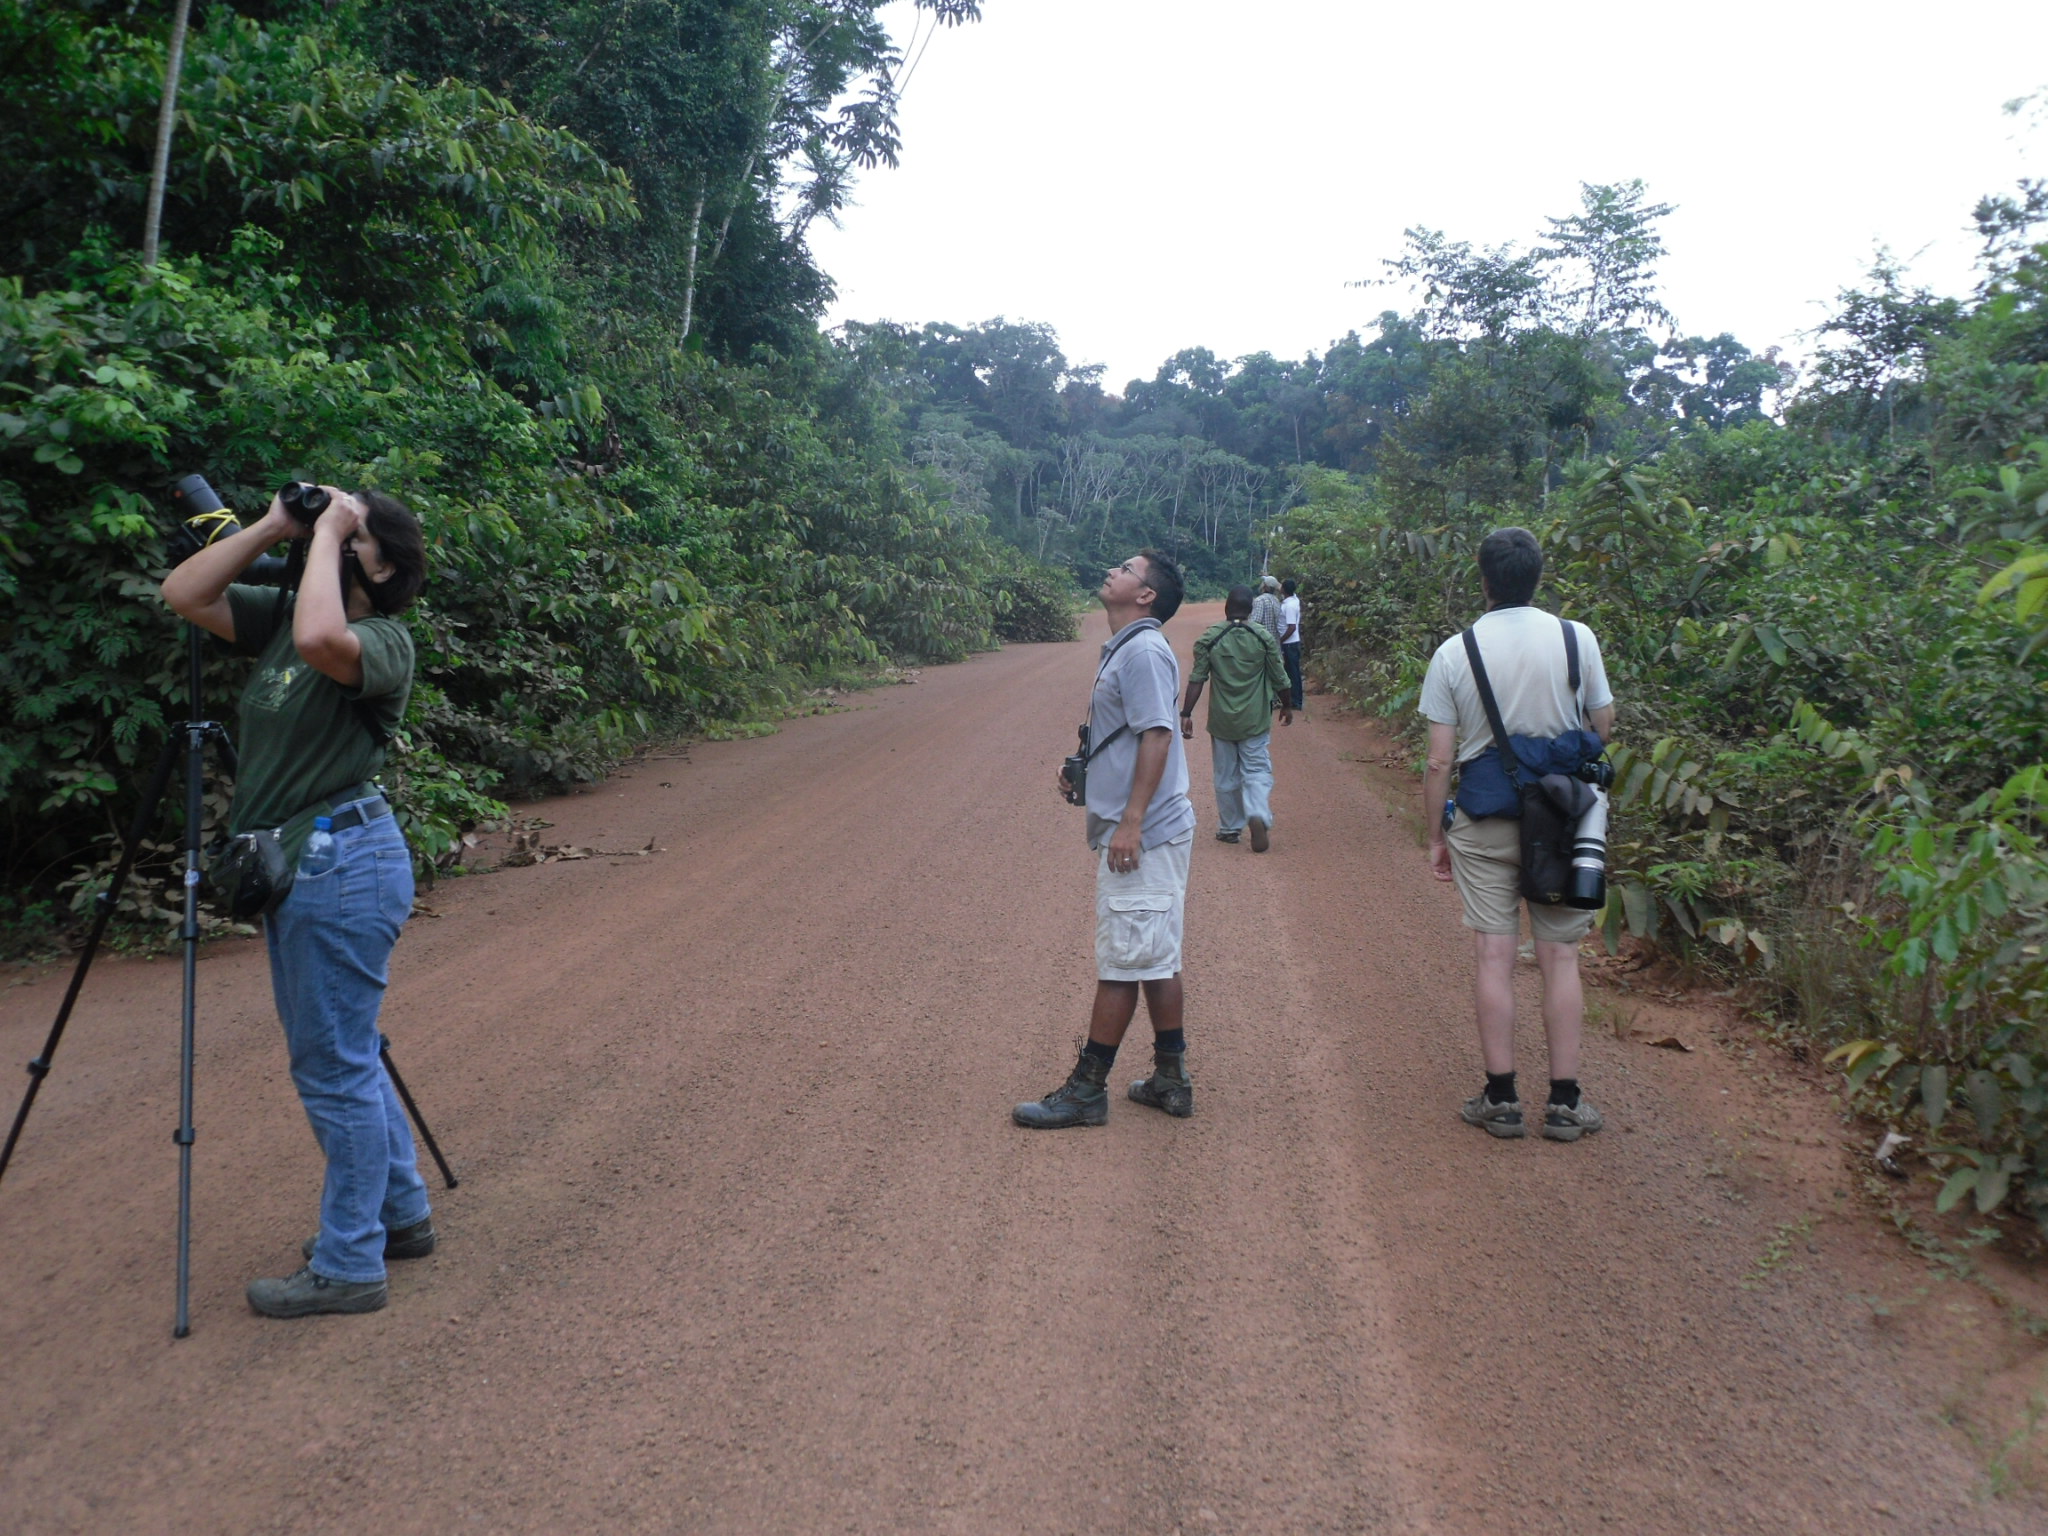 Birdwatching tours in Guyana